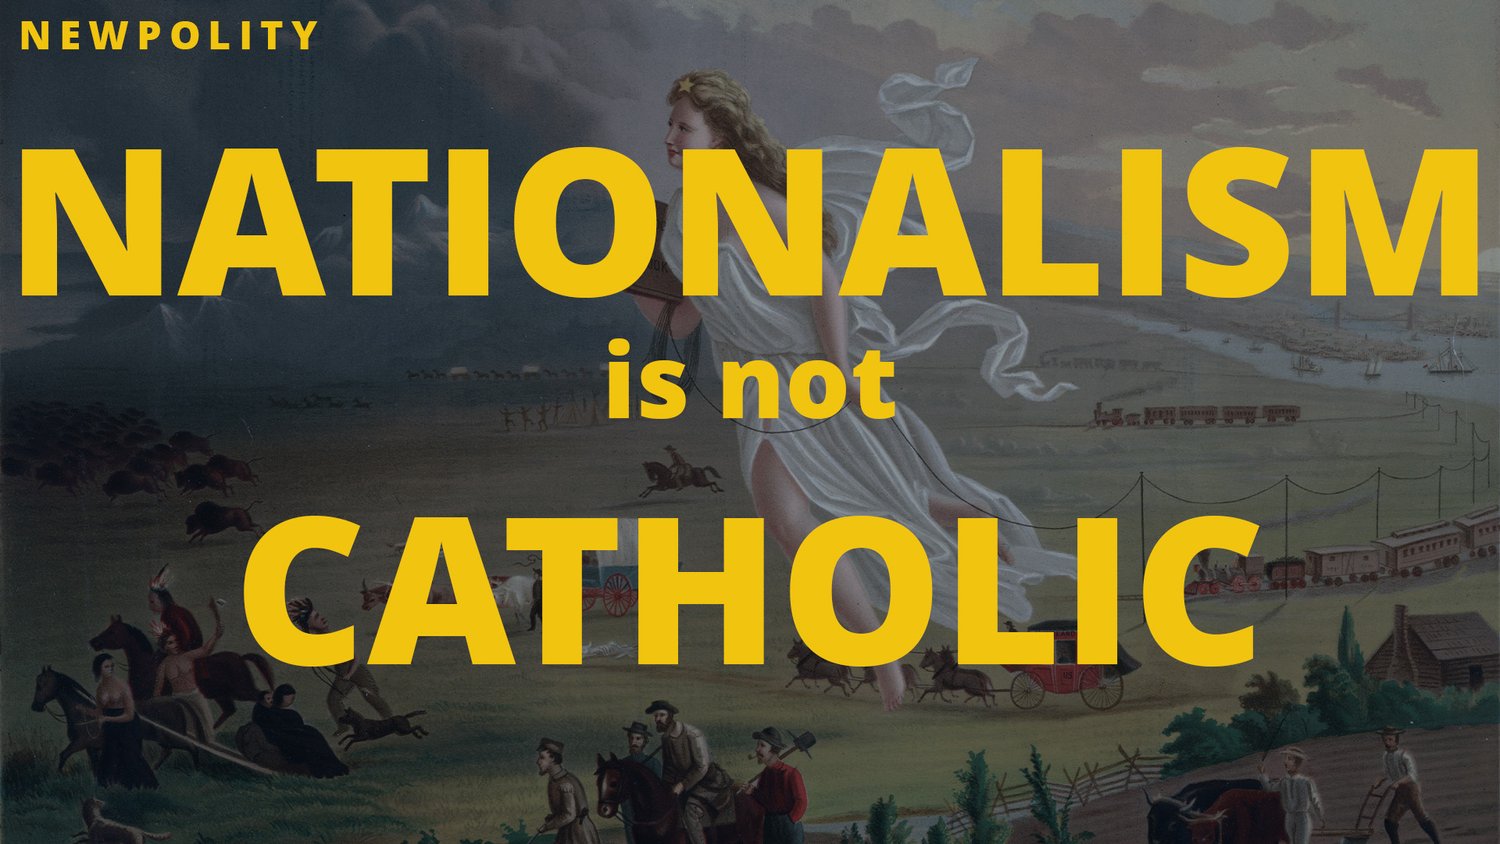 Throwback Thursday: Nationalism is not Catholic